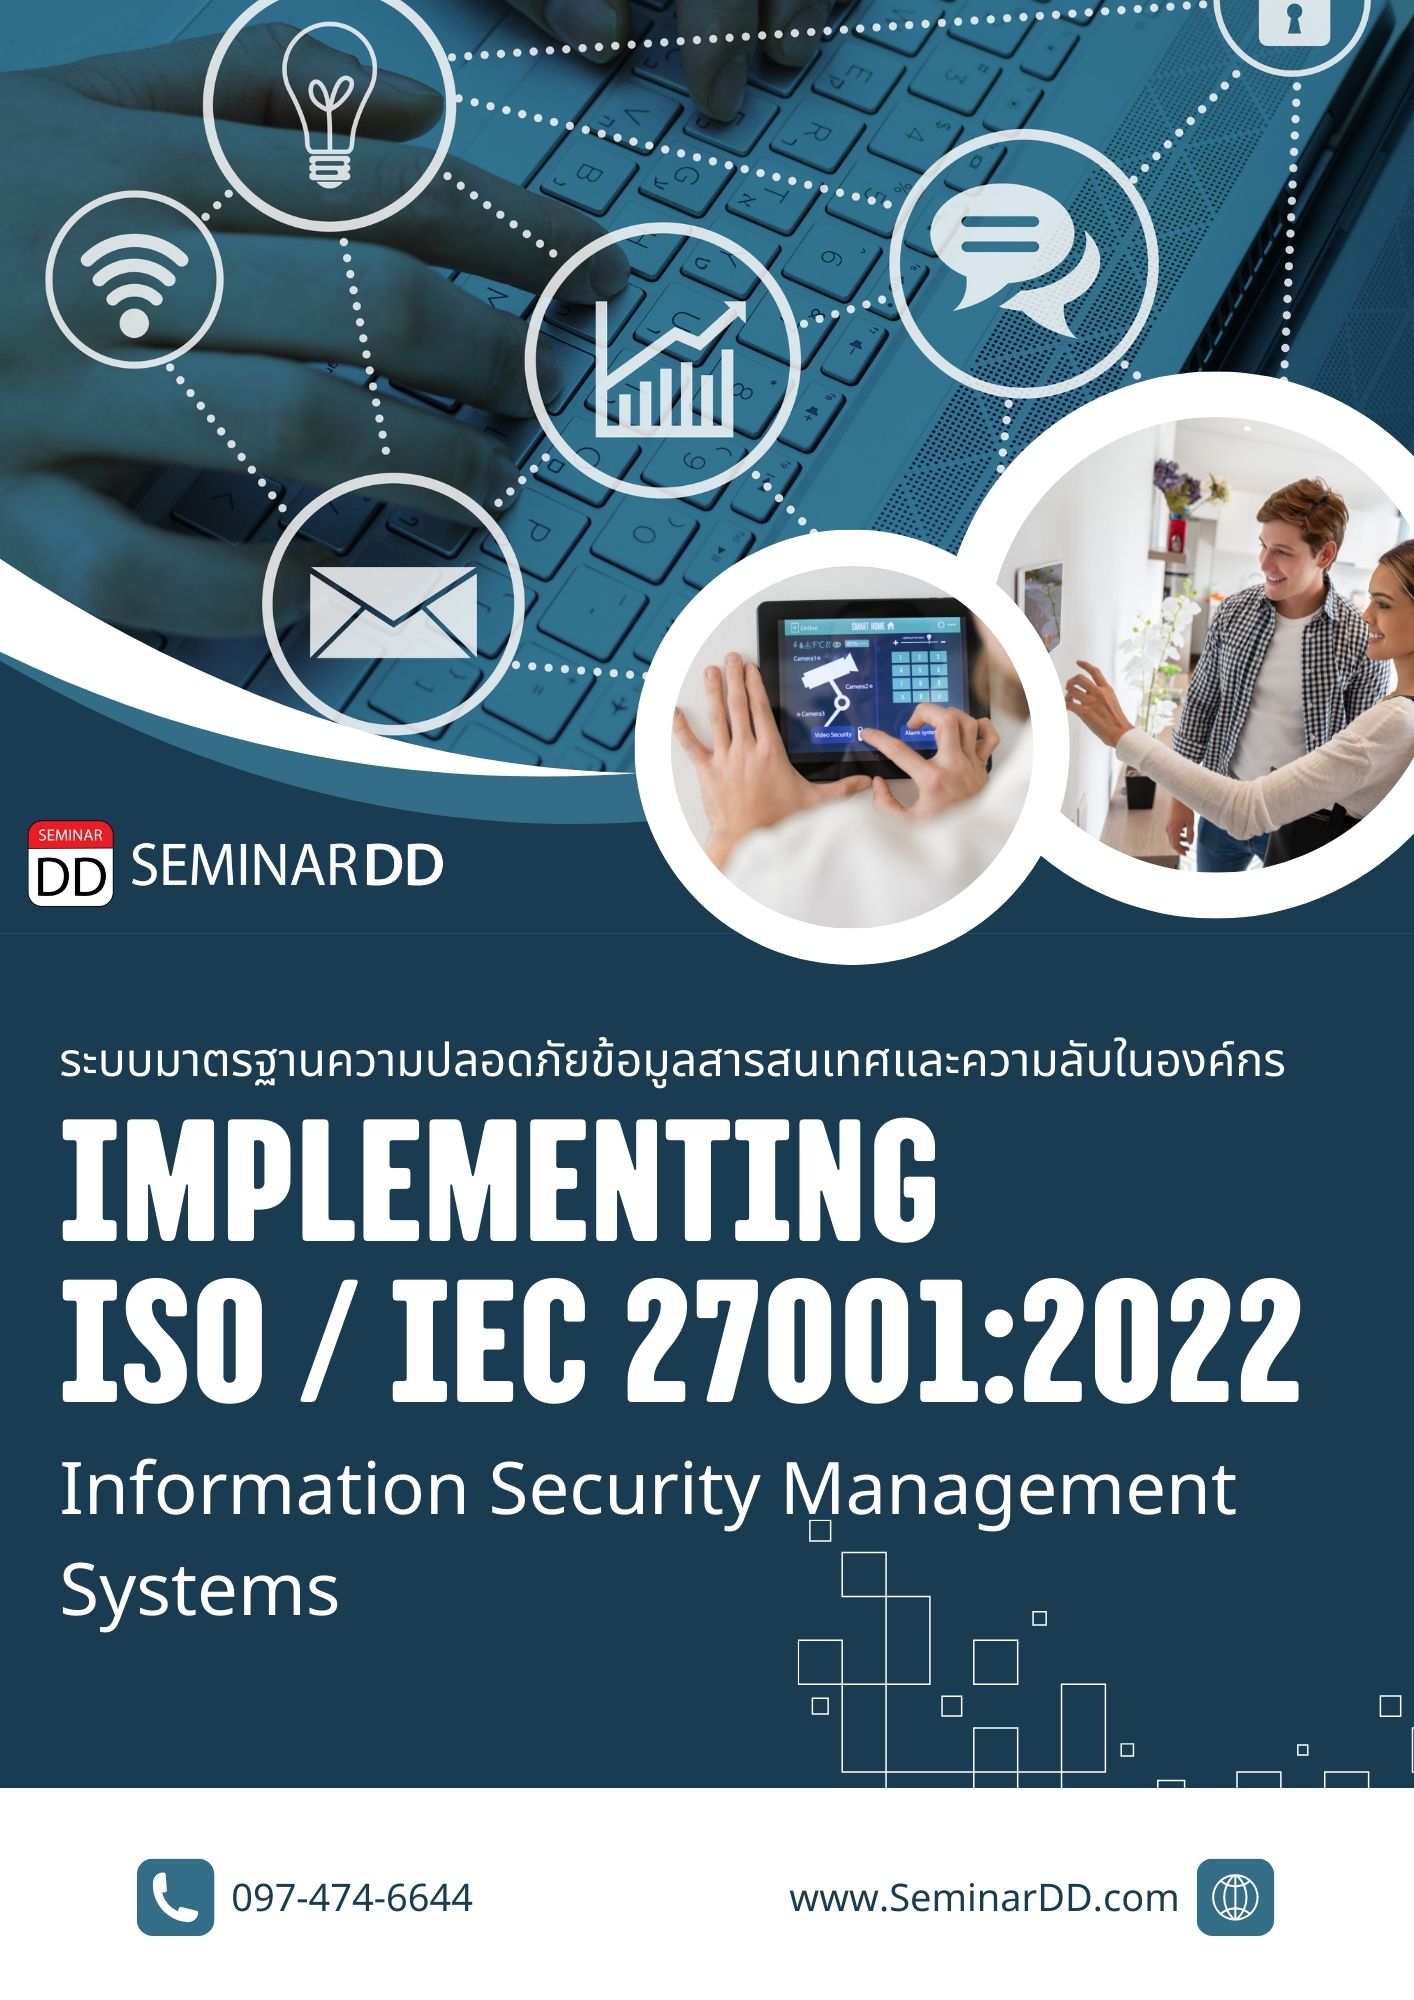 หลักสูตร Implementing ISO/IEC 27001:2022 Information Security Management Systems